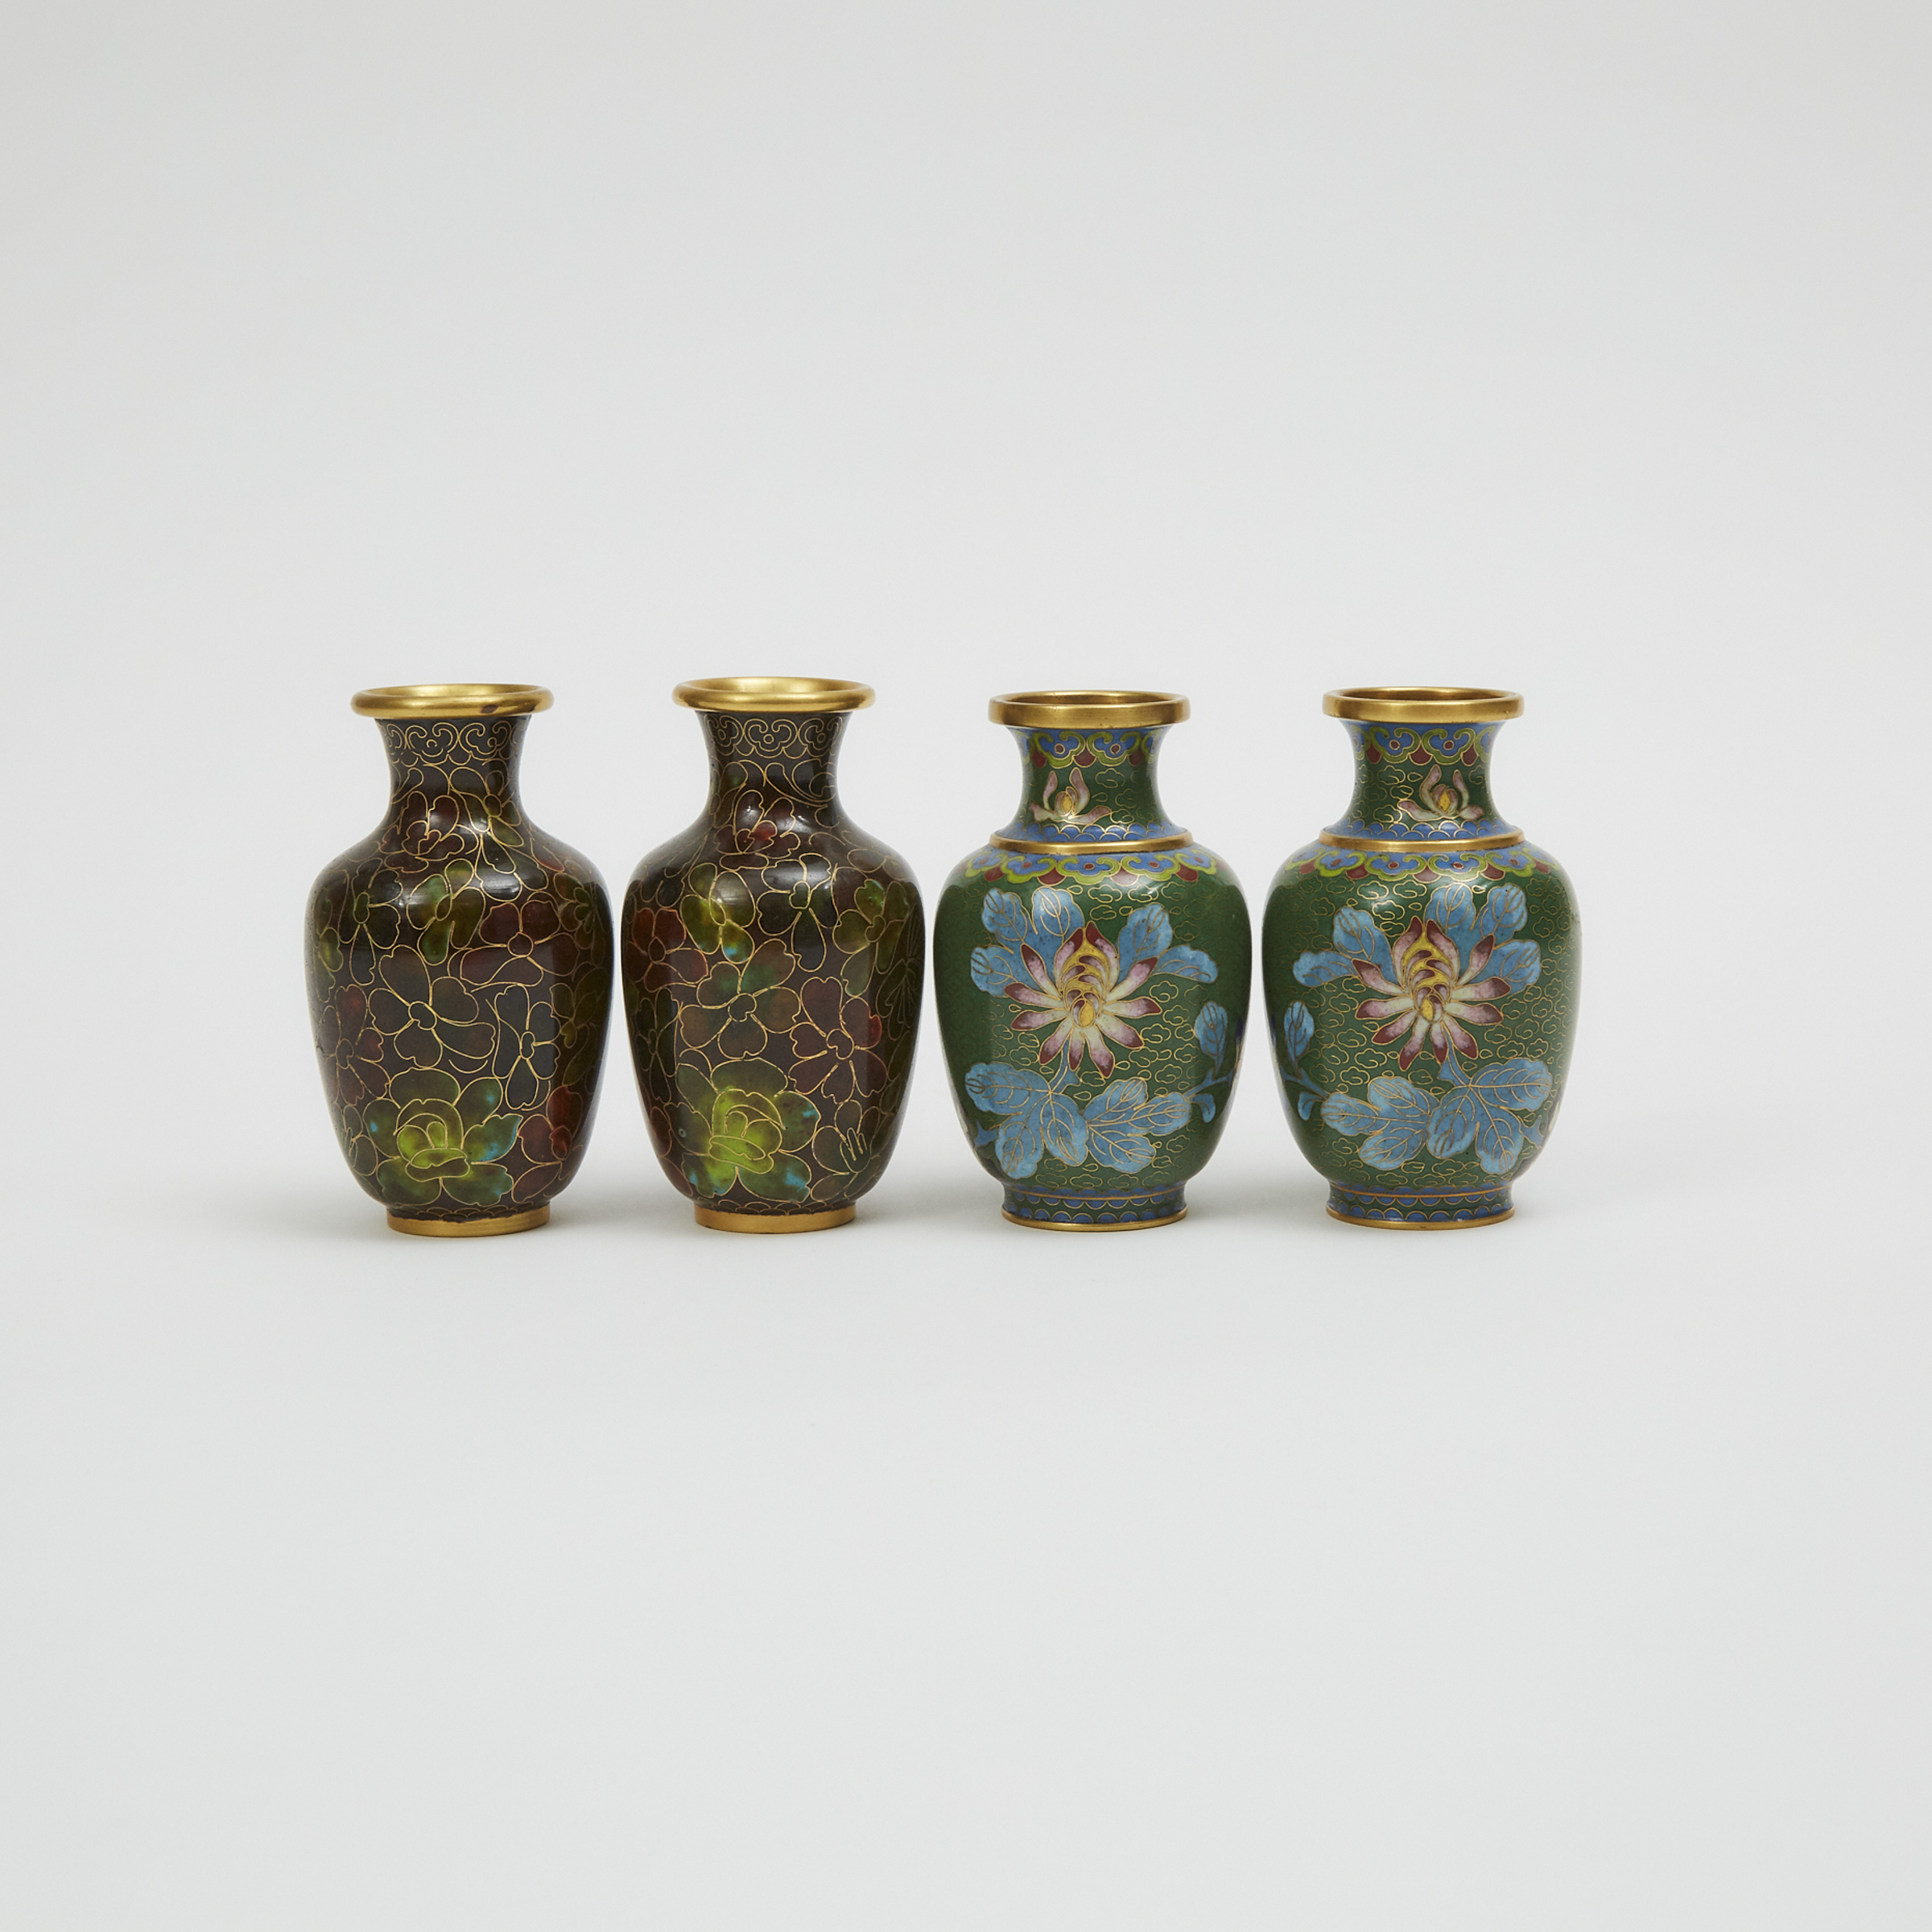 A Group of Four Miniature Cloisonné Vases